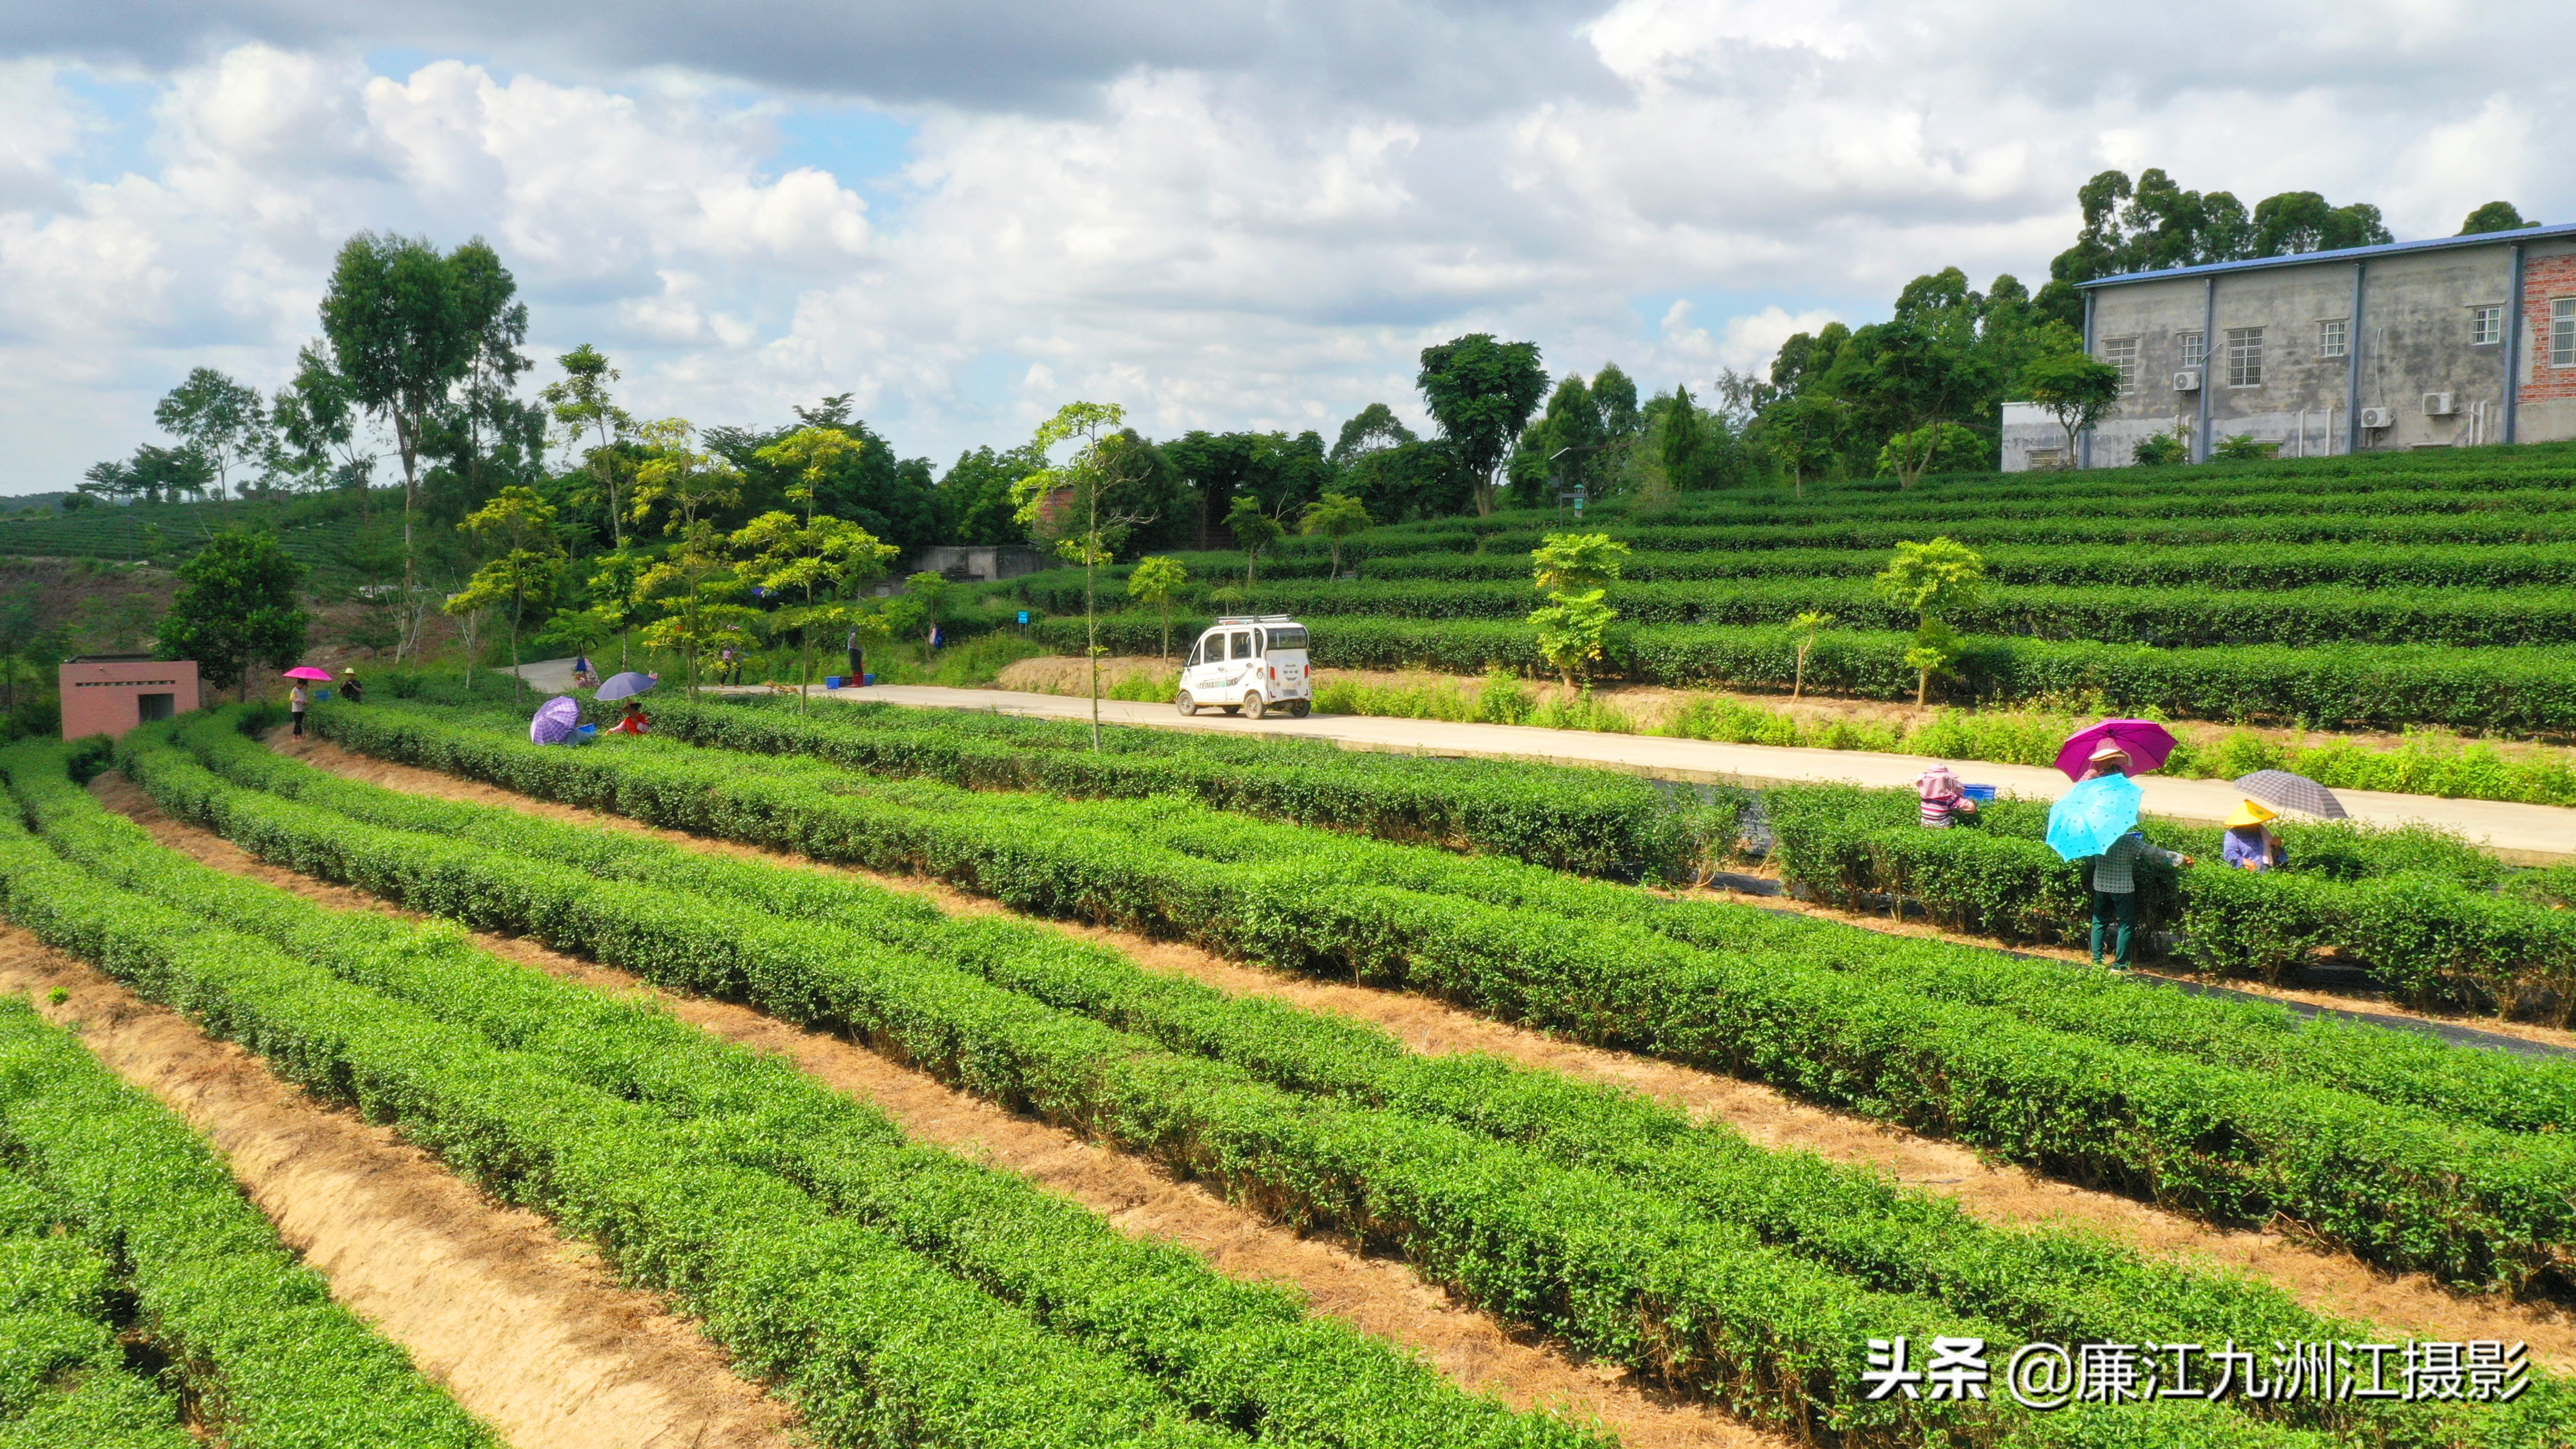 九洲江攝影師走進茗禾茶種植基地